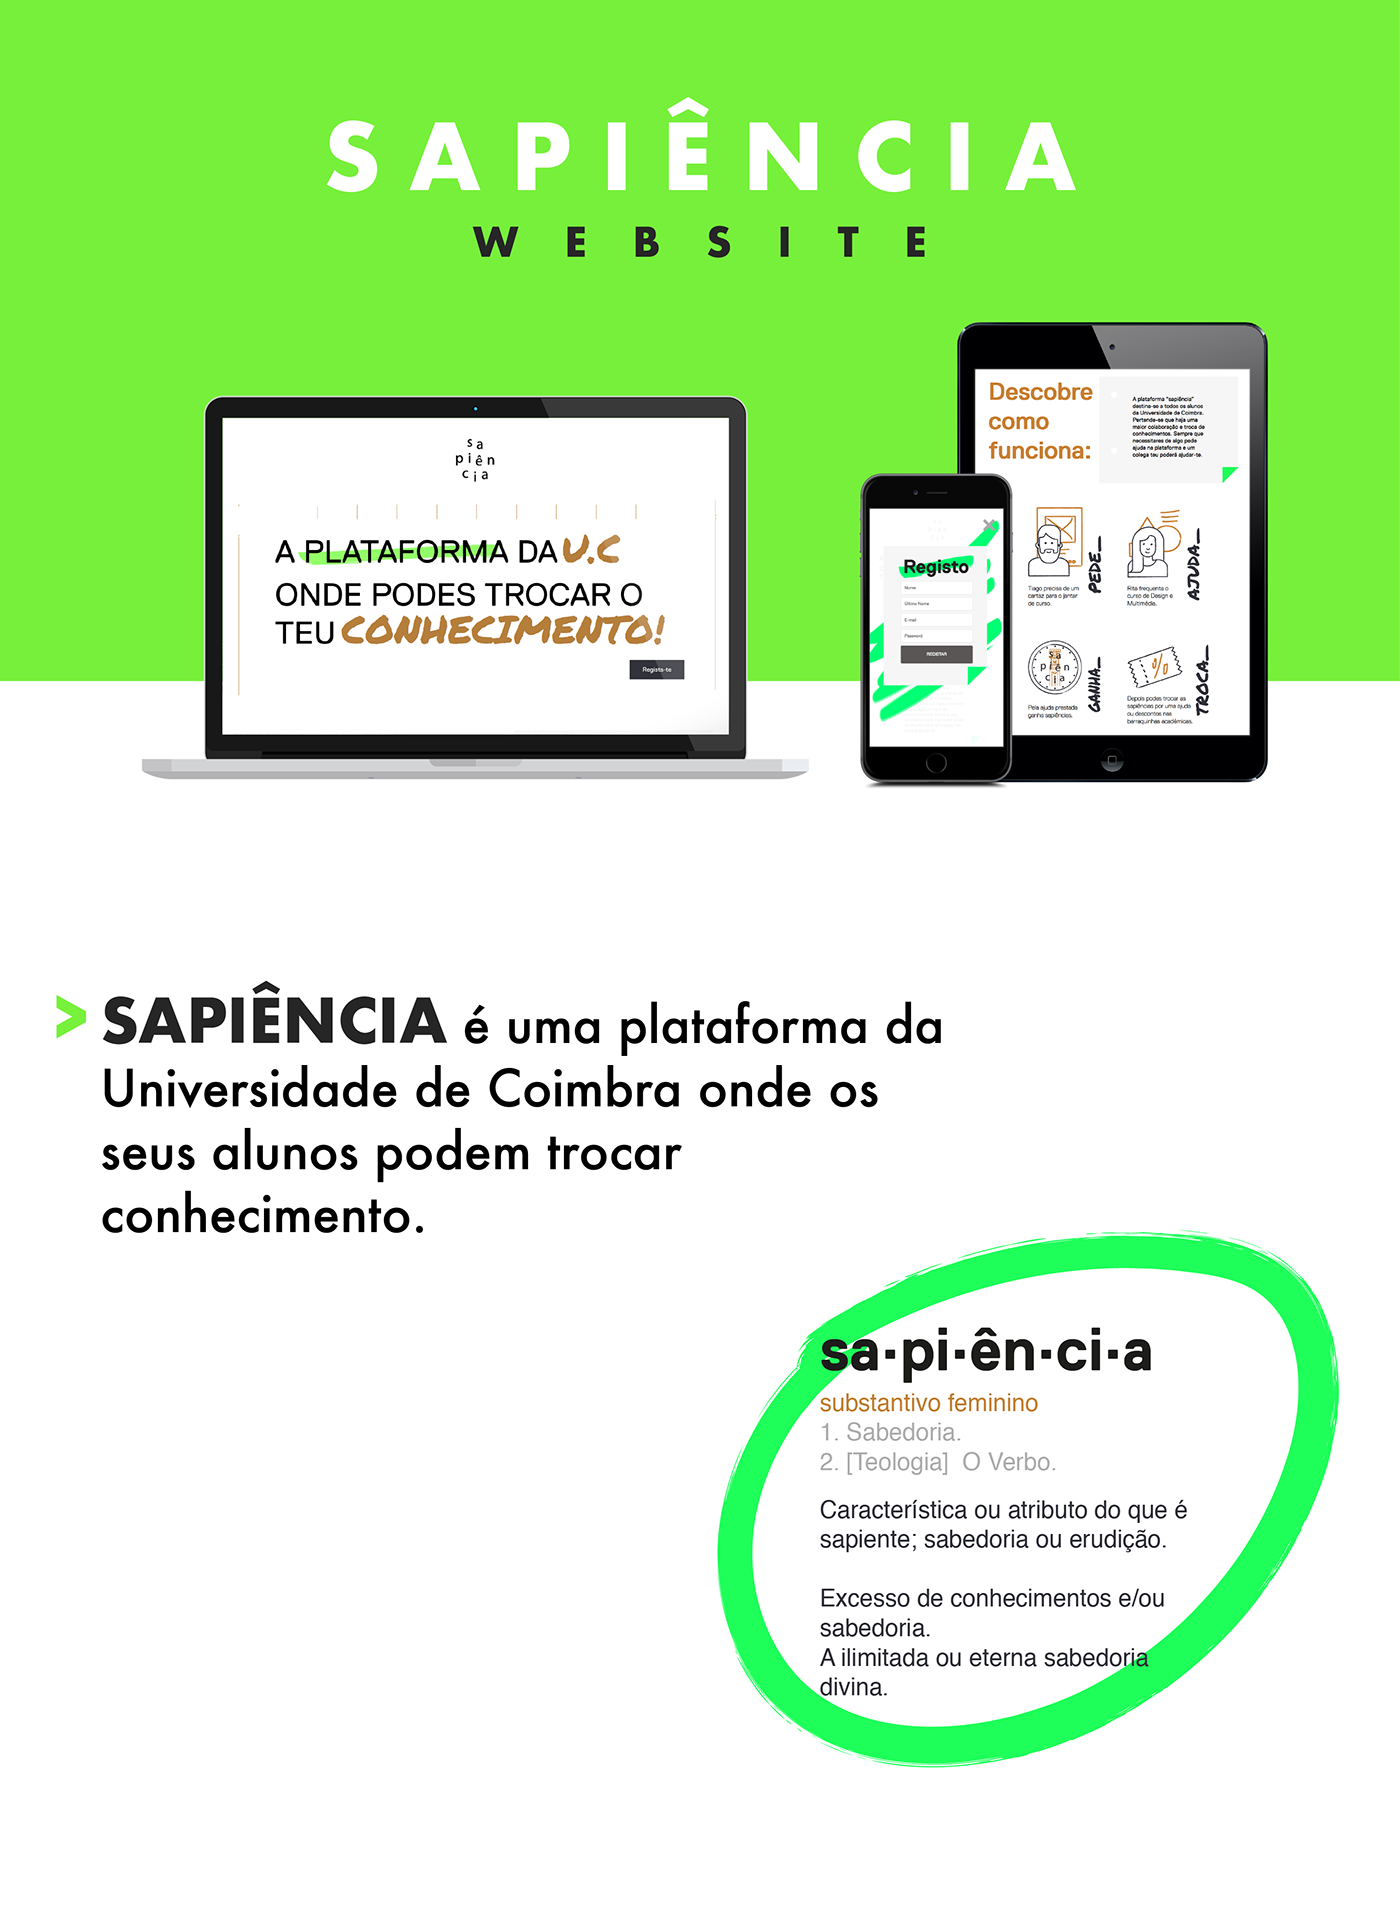 Webdesign Website sapiência universidade de coimbra Coimbra knowledge